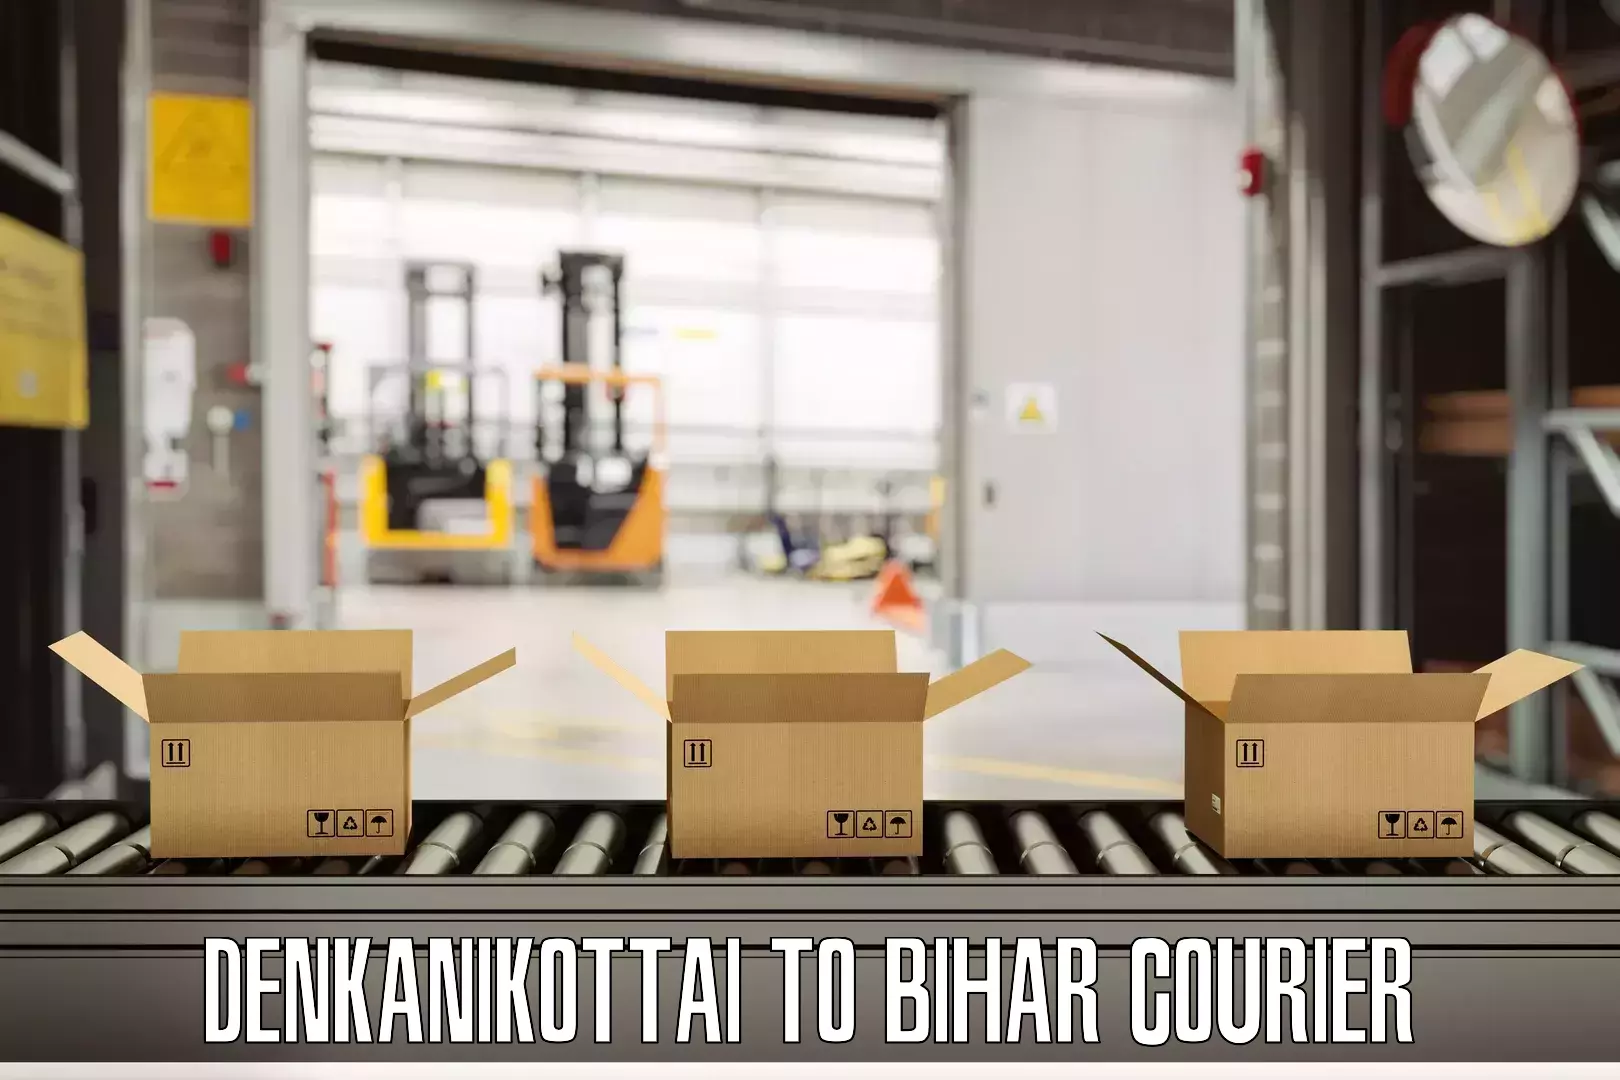 Luggage delivery optimization Denkanikottai to Bihar